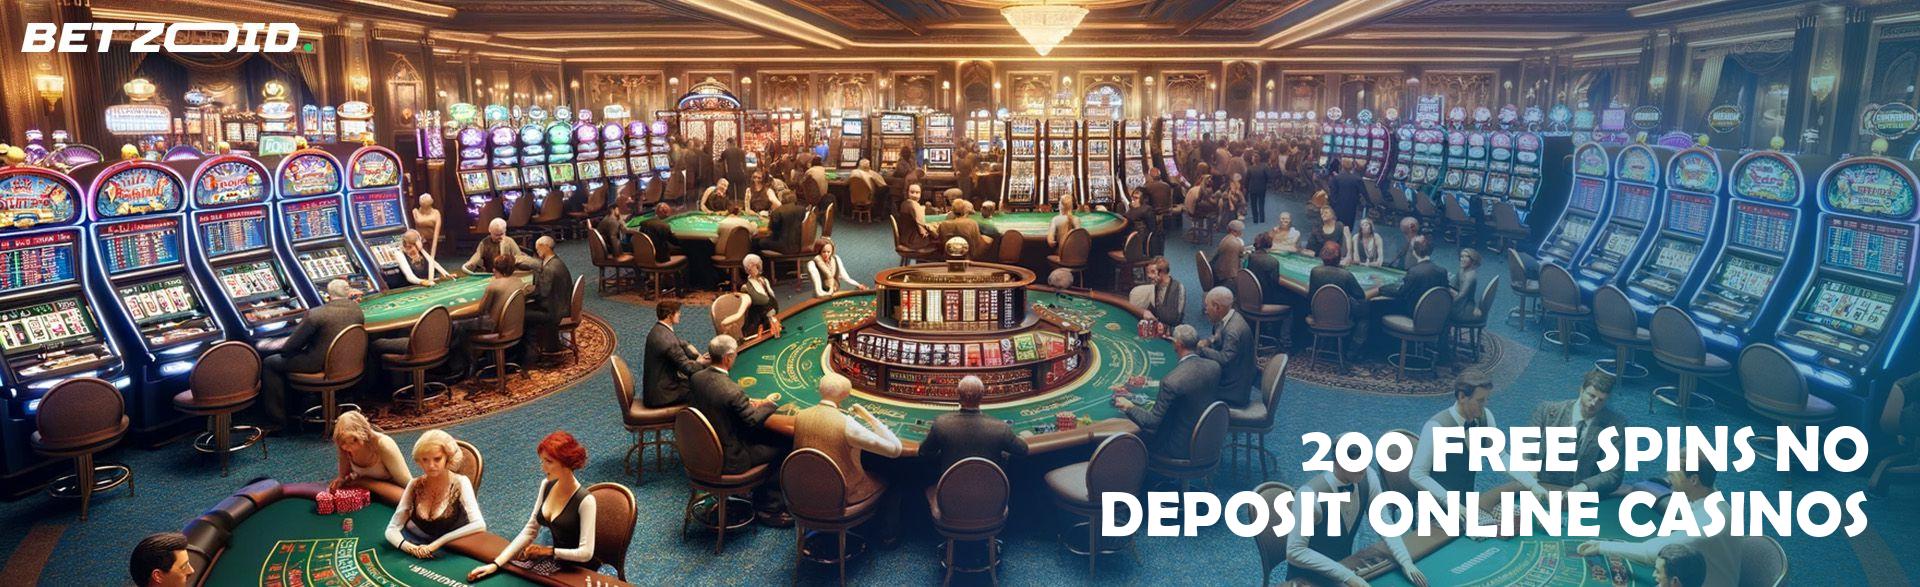 200 Free Spins No Deposit Online Casinos.